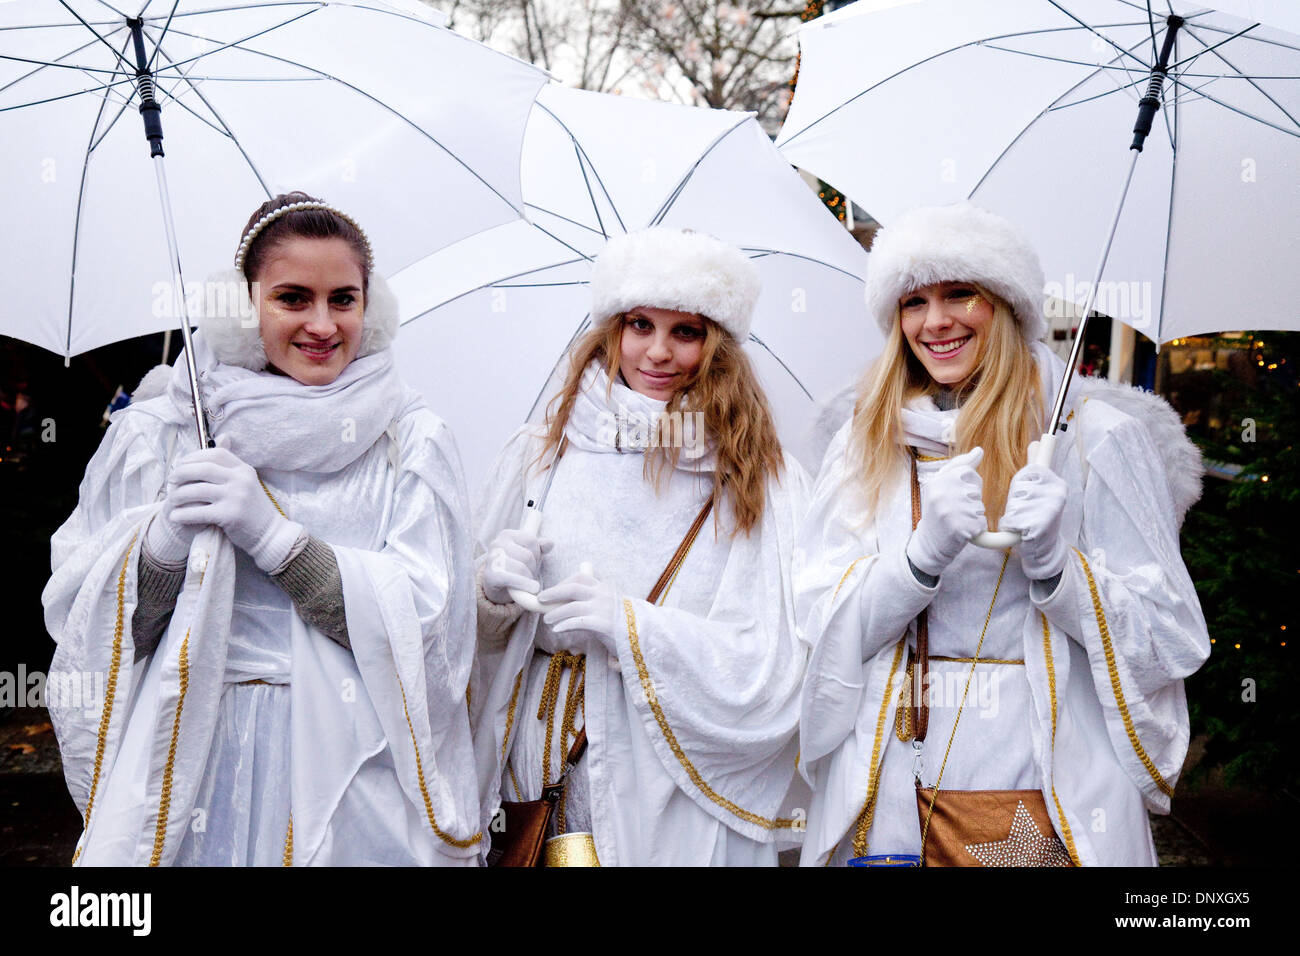 Drei junge Frauen gekleidet als Weihnachtsengel, Engel Markt oder Newmarkt Weihnachtsmarkt, Köln, Deutschland, Europa Stockfoto